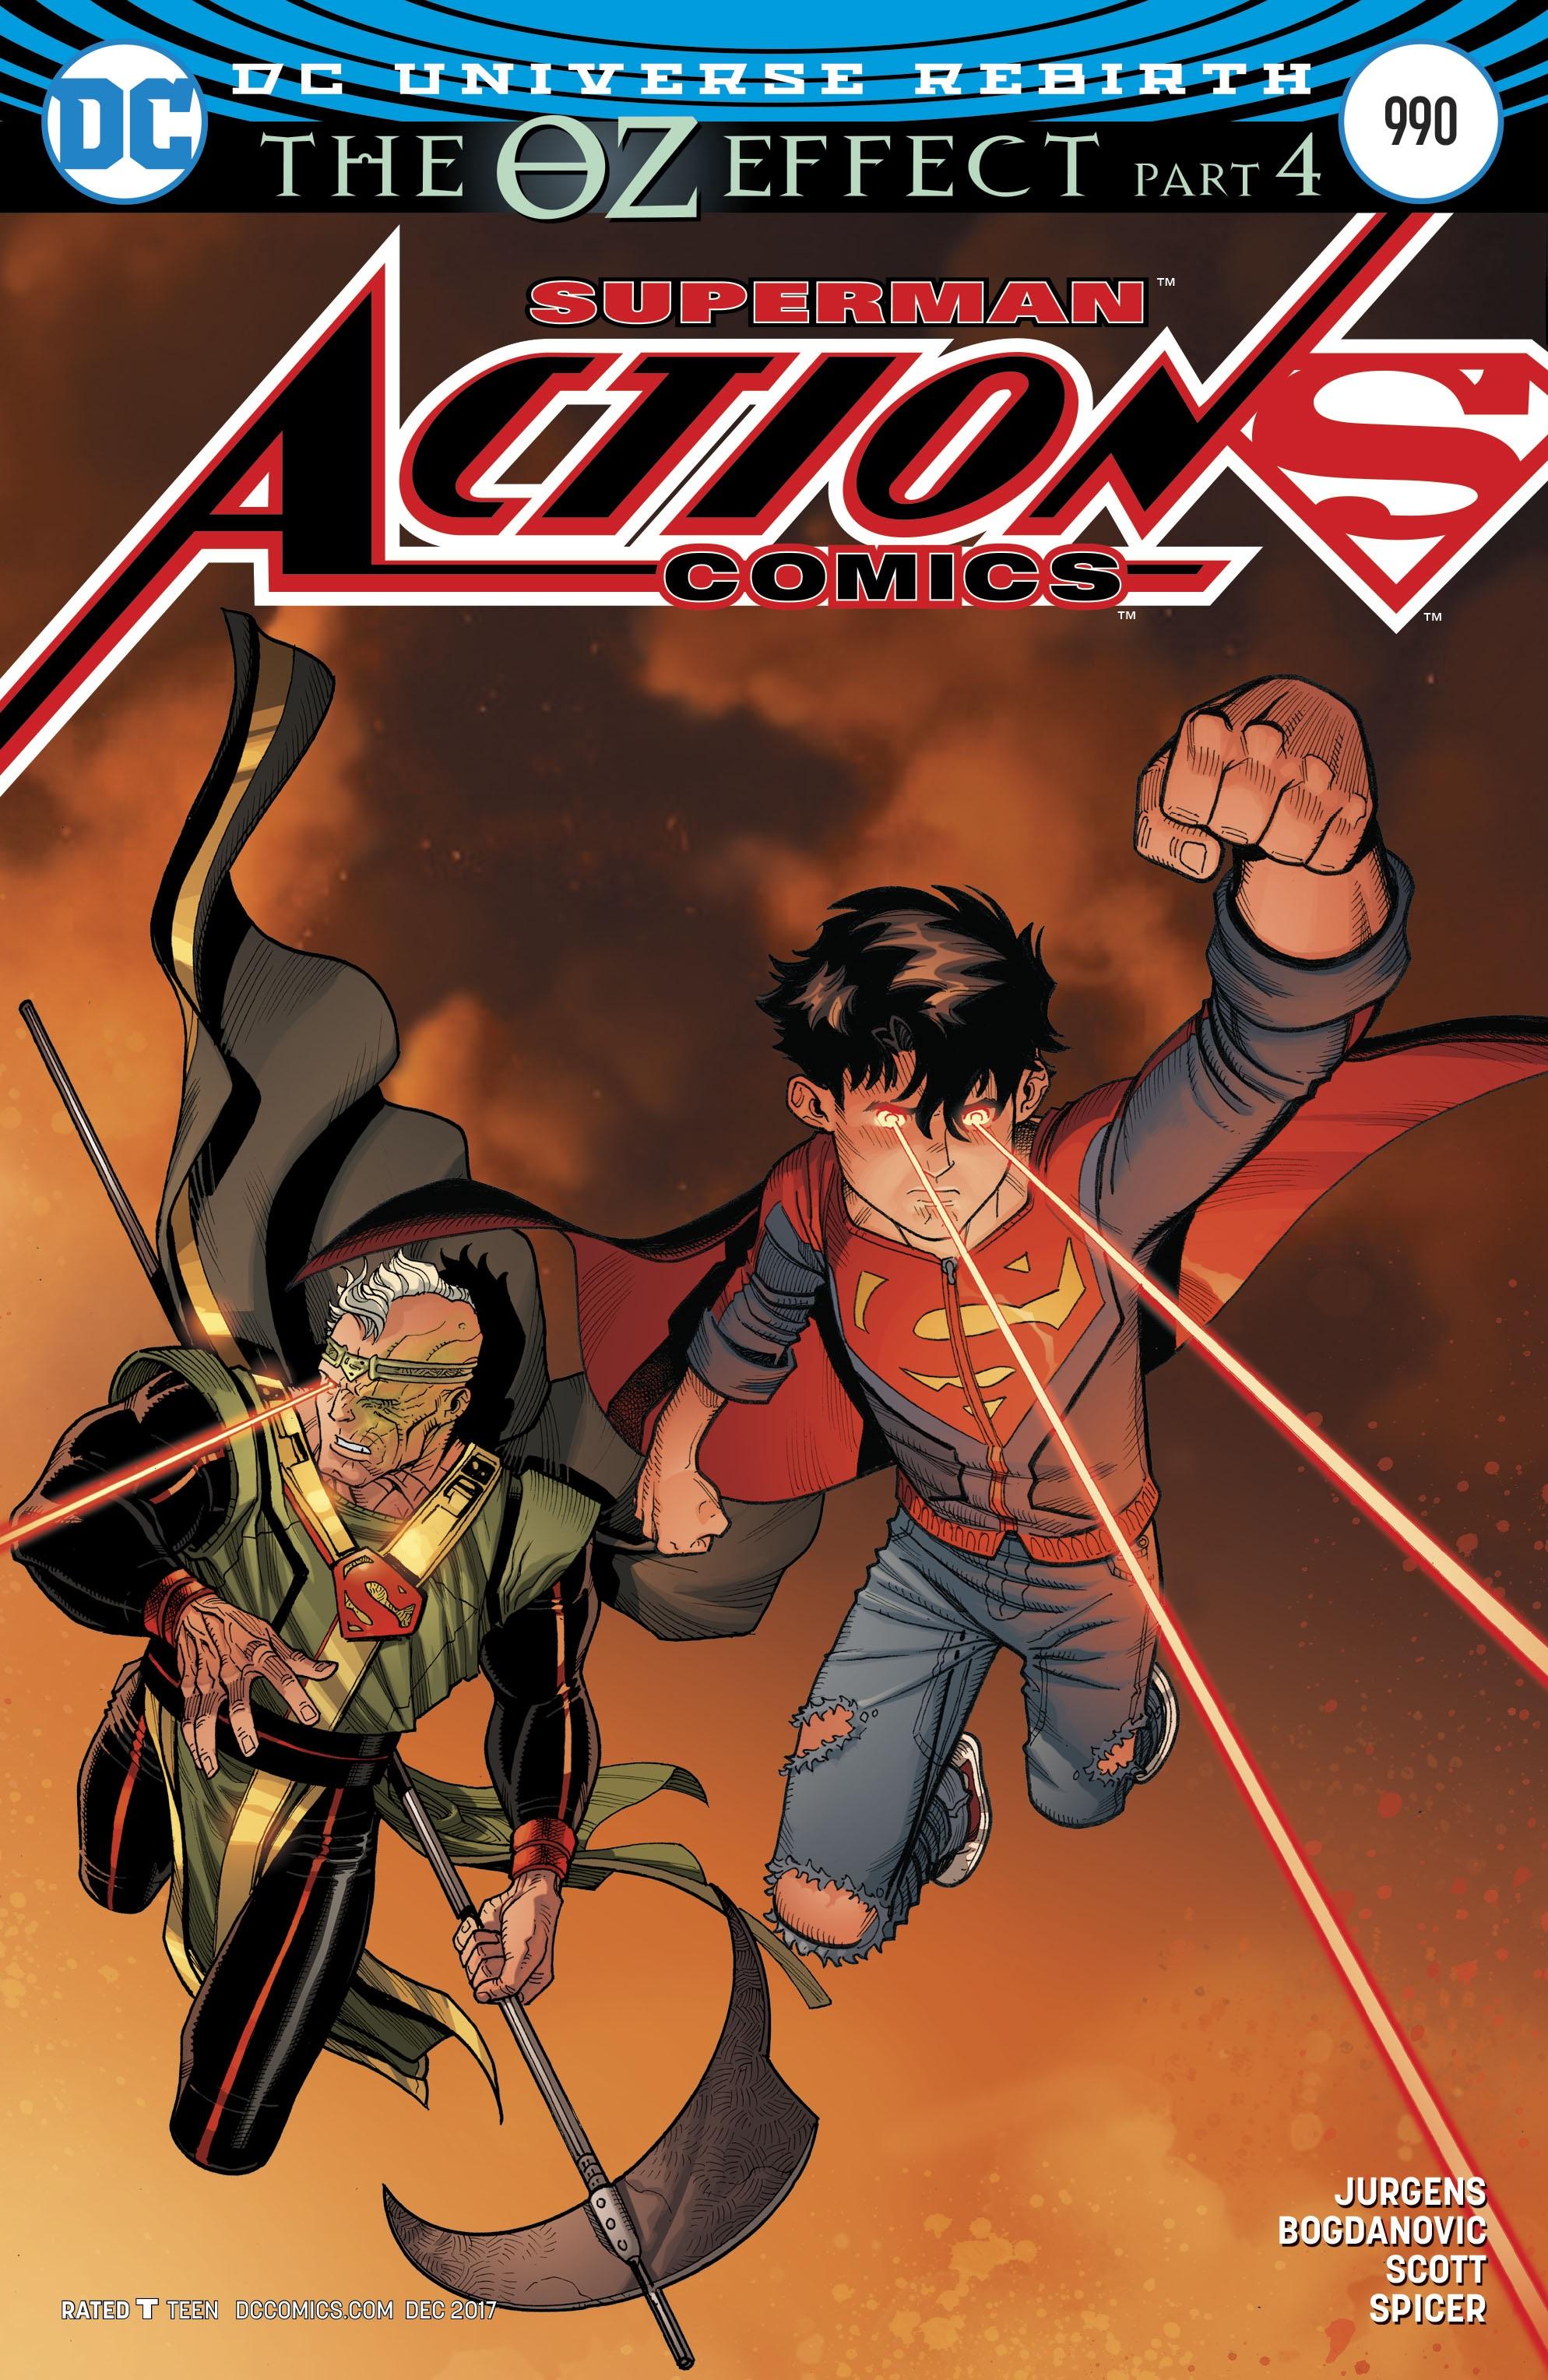 Action Comics Vol. 1 #990